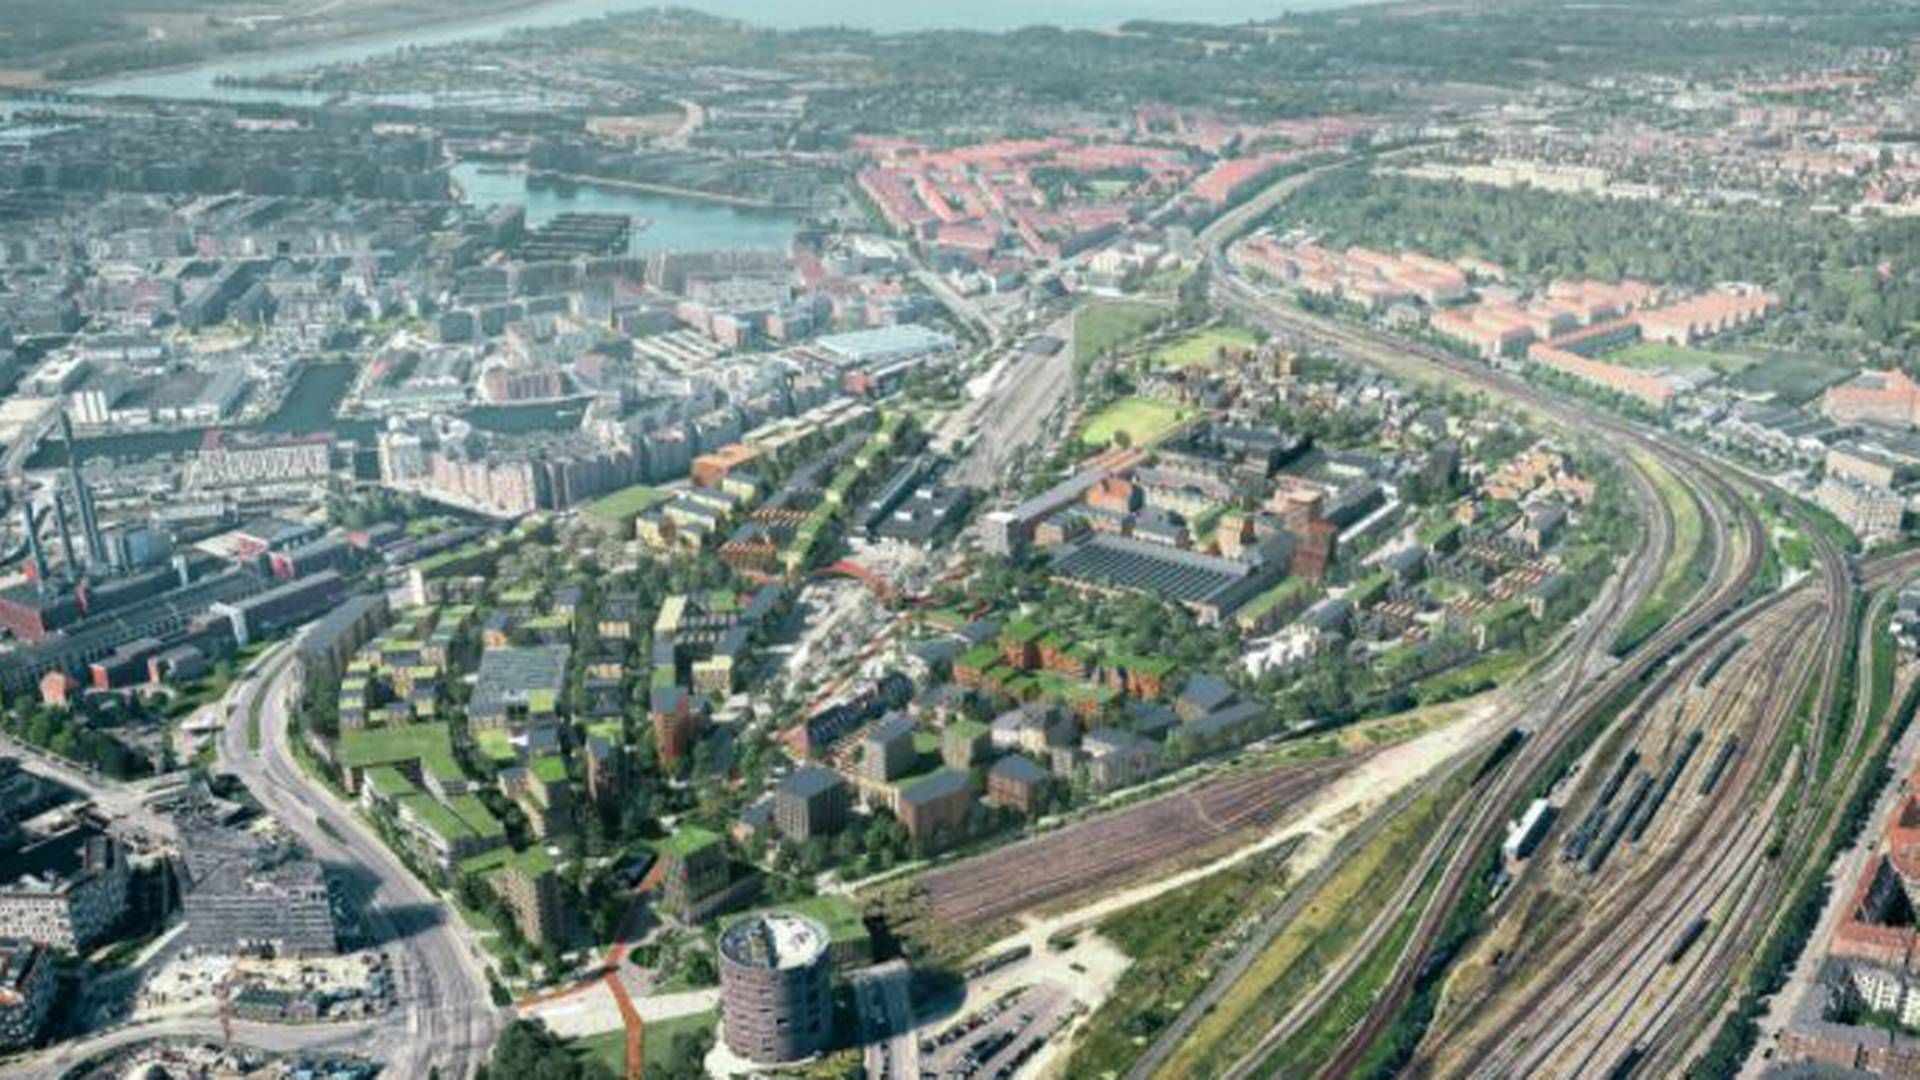 Et hold med arkitektfirmaet Cobe i spidsen vandt i april 2021 konkurrencen om at udvikle en helhedsplan for Jernbanebyen i København. | Foto: PR-visualisering / Cobe